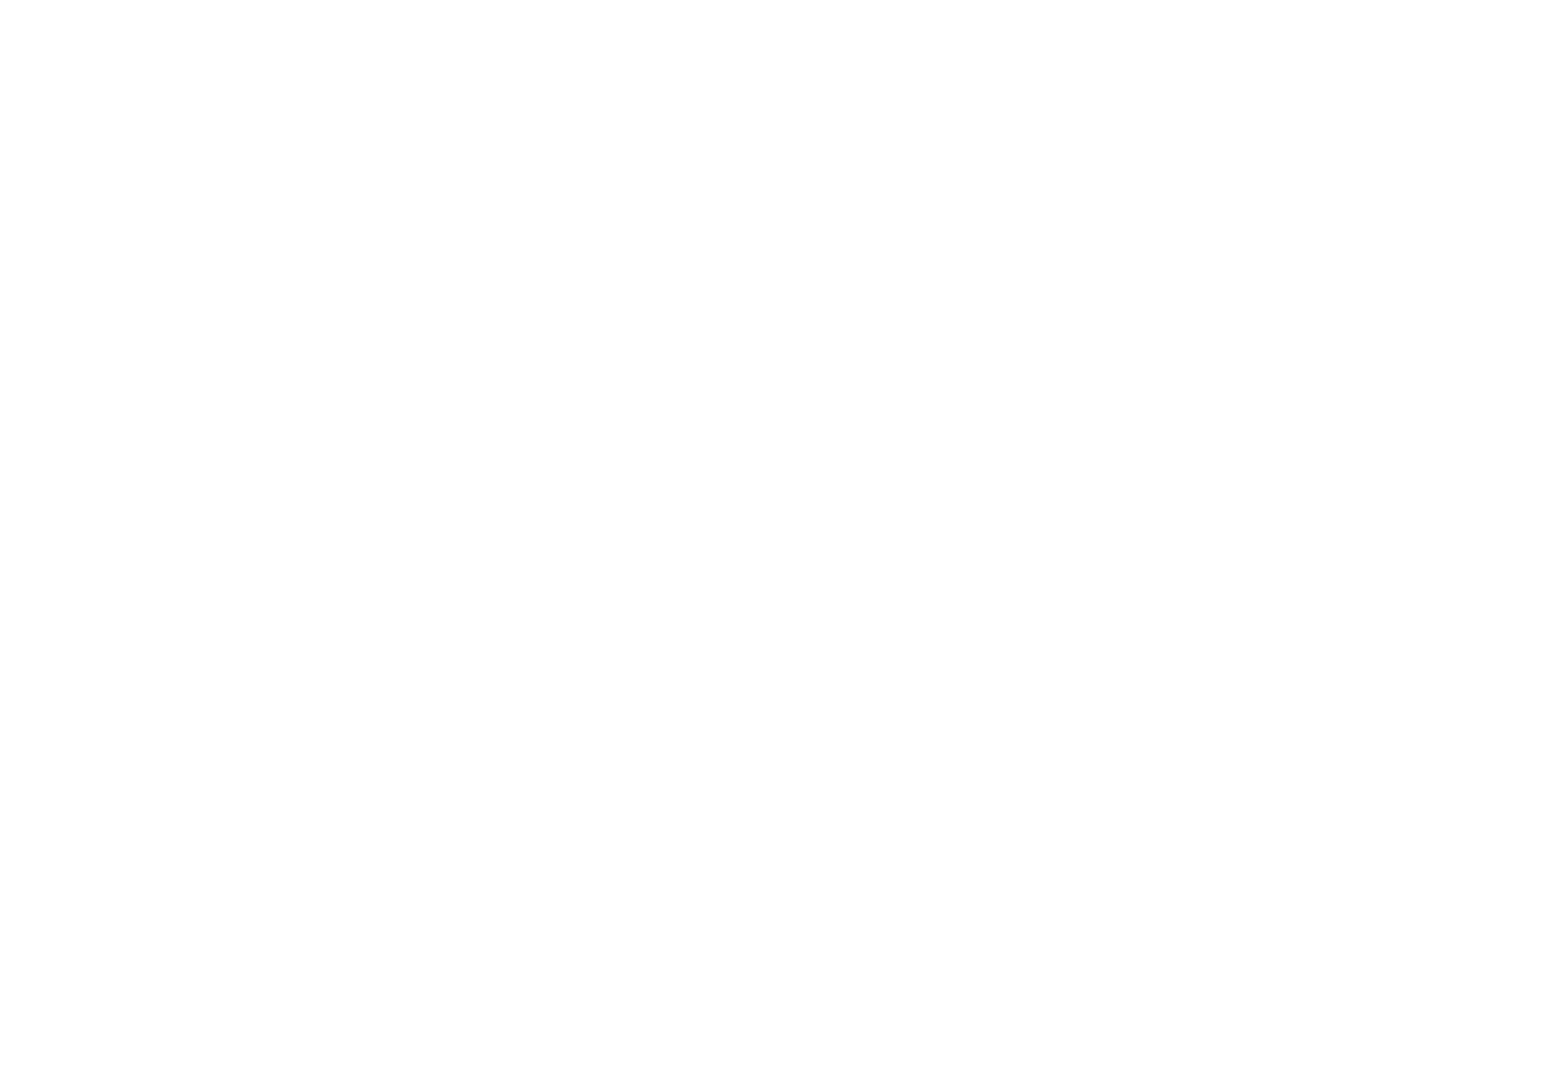 goeasy logo for dark backgrounds (transparent PNG)